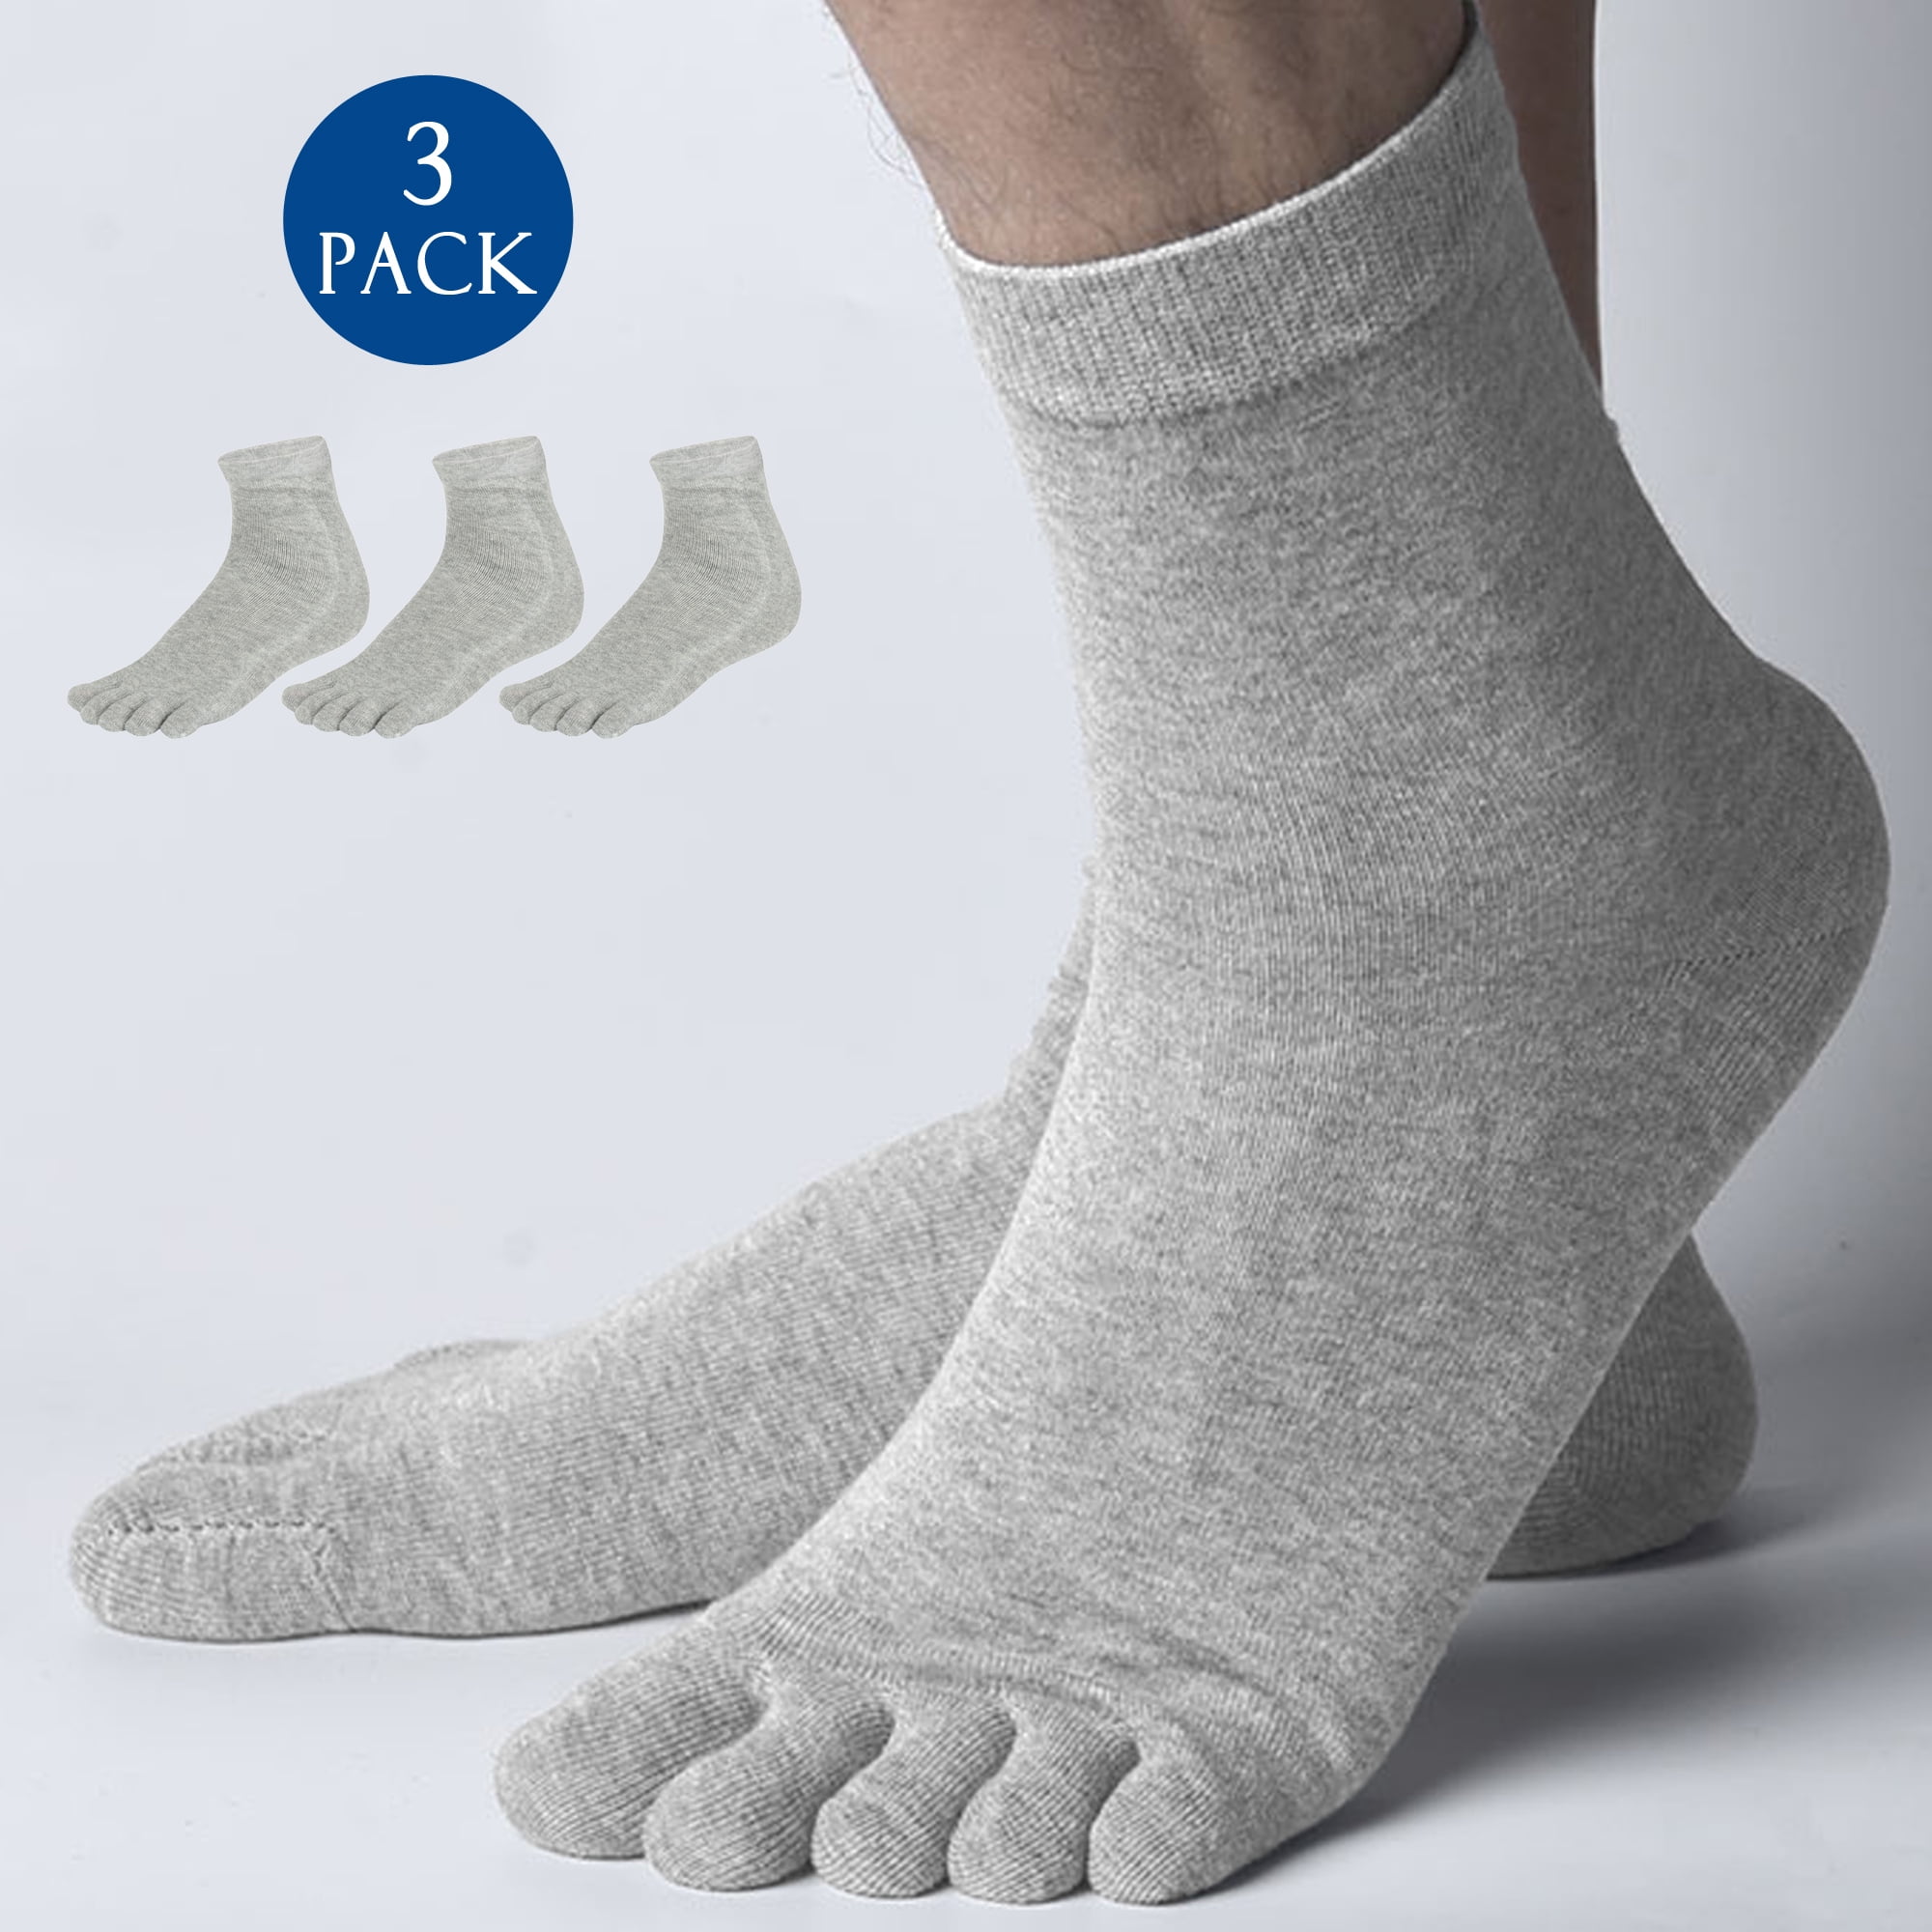 Five Fingers Socken Toe Socks 39-42 Gr 